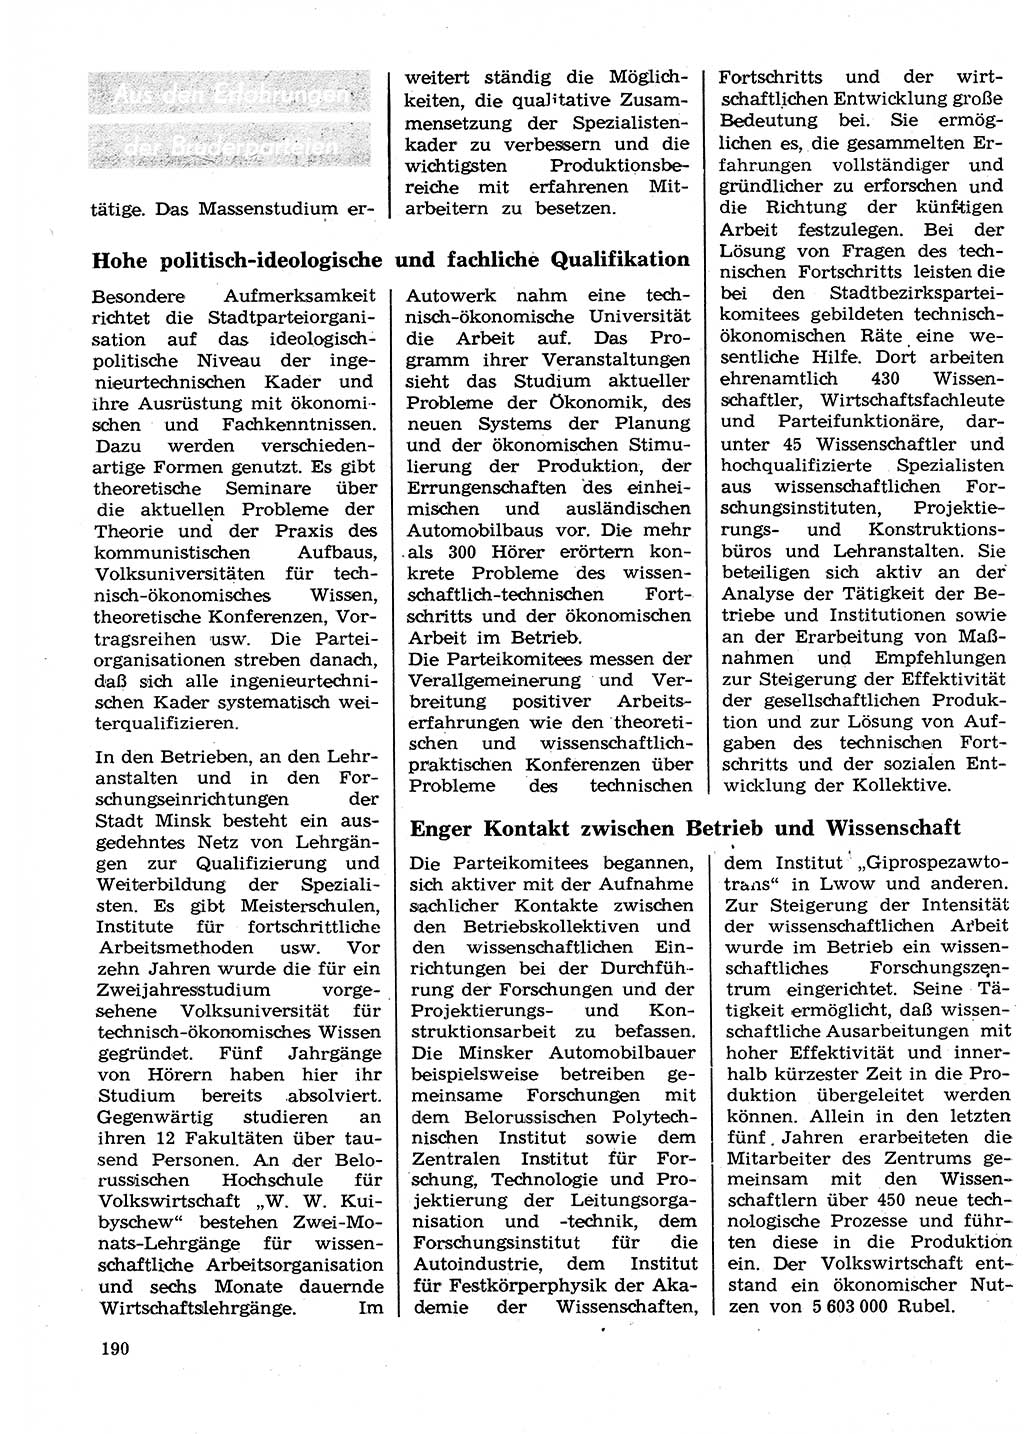 Neuer Weg (NW), Organ des Zentralkomitees (ZK) der SED (Sozialistische Einheitspartei Deutschlands) für Fragen des Parteilebens, 26. Jahrgang [Deutsche Demokratische Republik (DDR)] 1971, Seite 190 (NW ZK SED DDR 1971, S. 190)